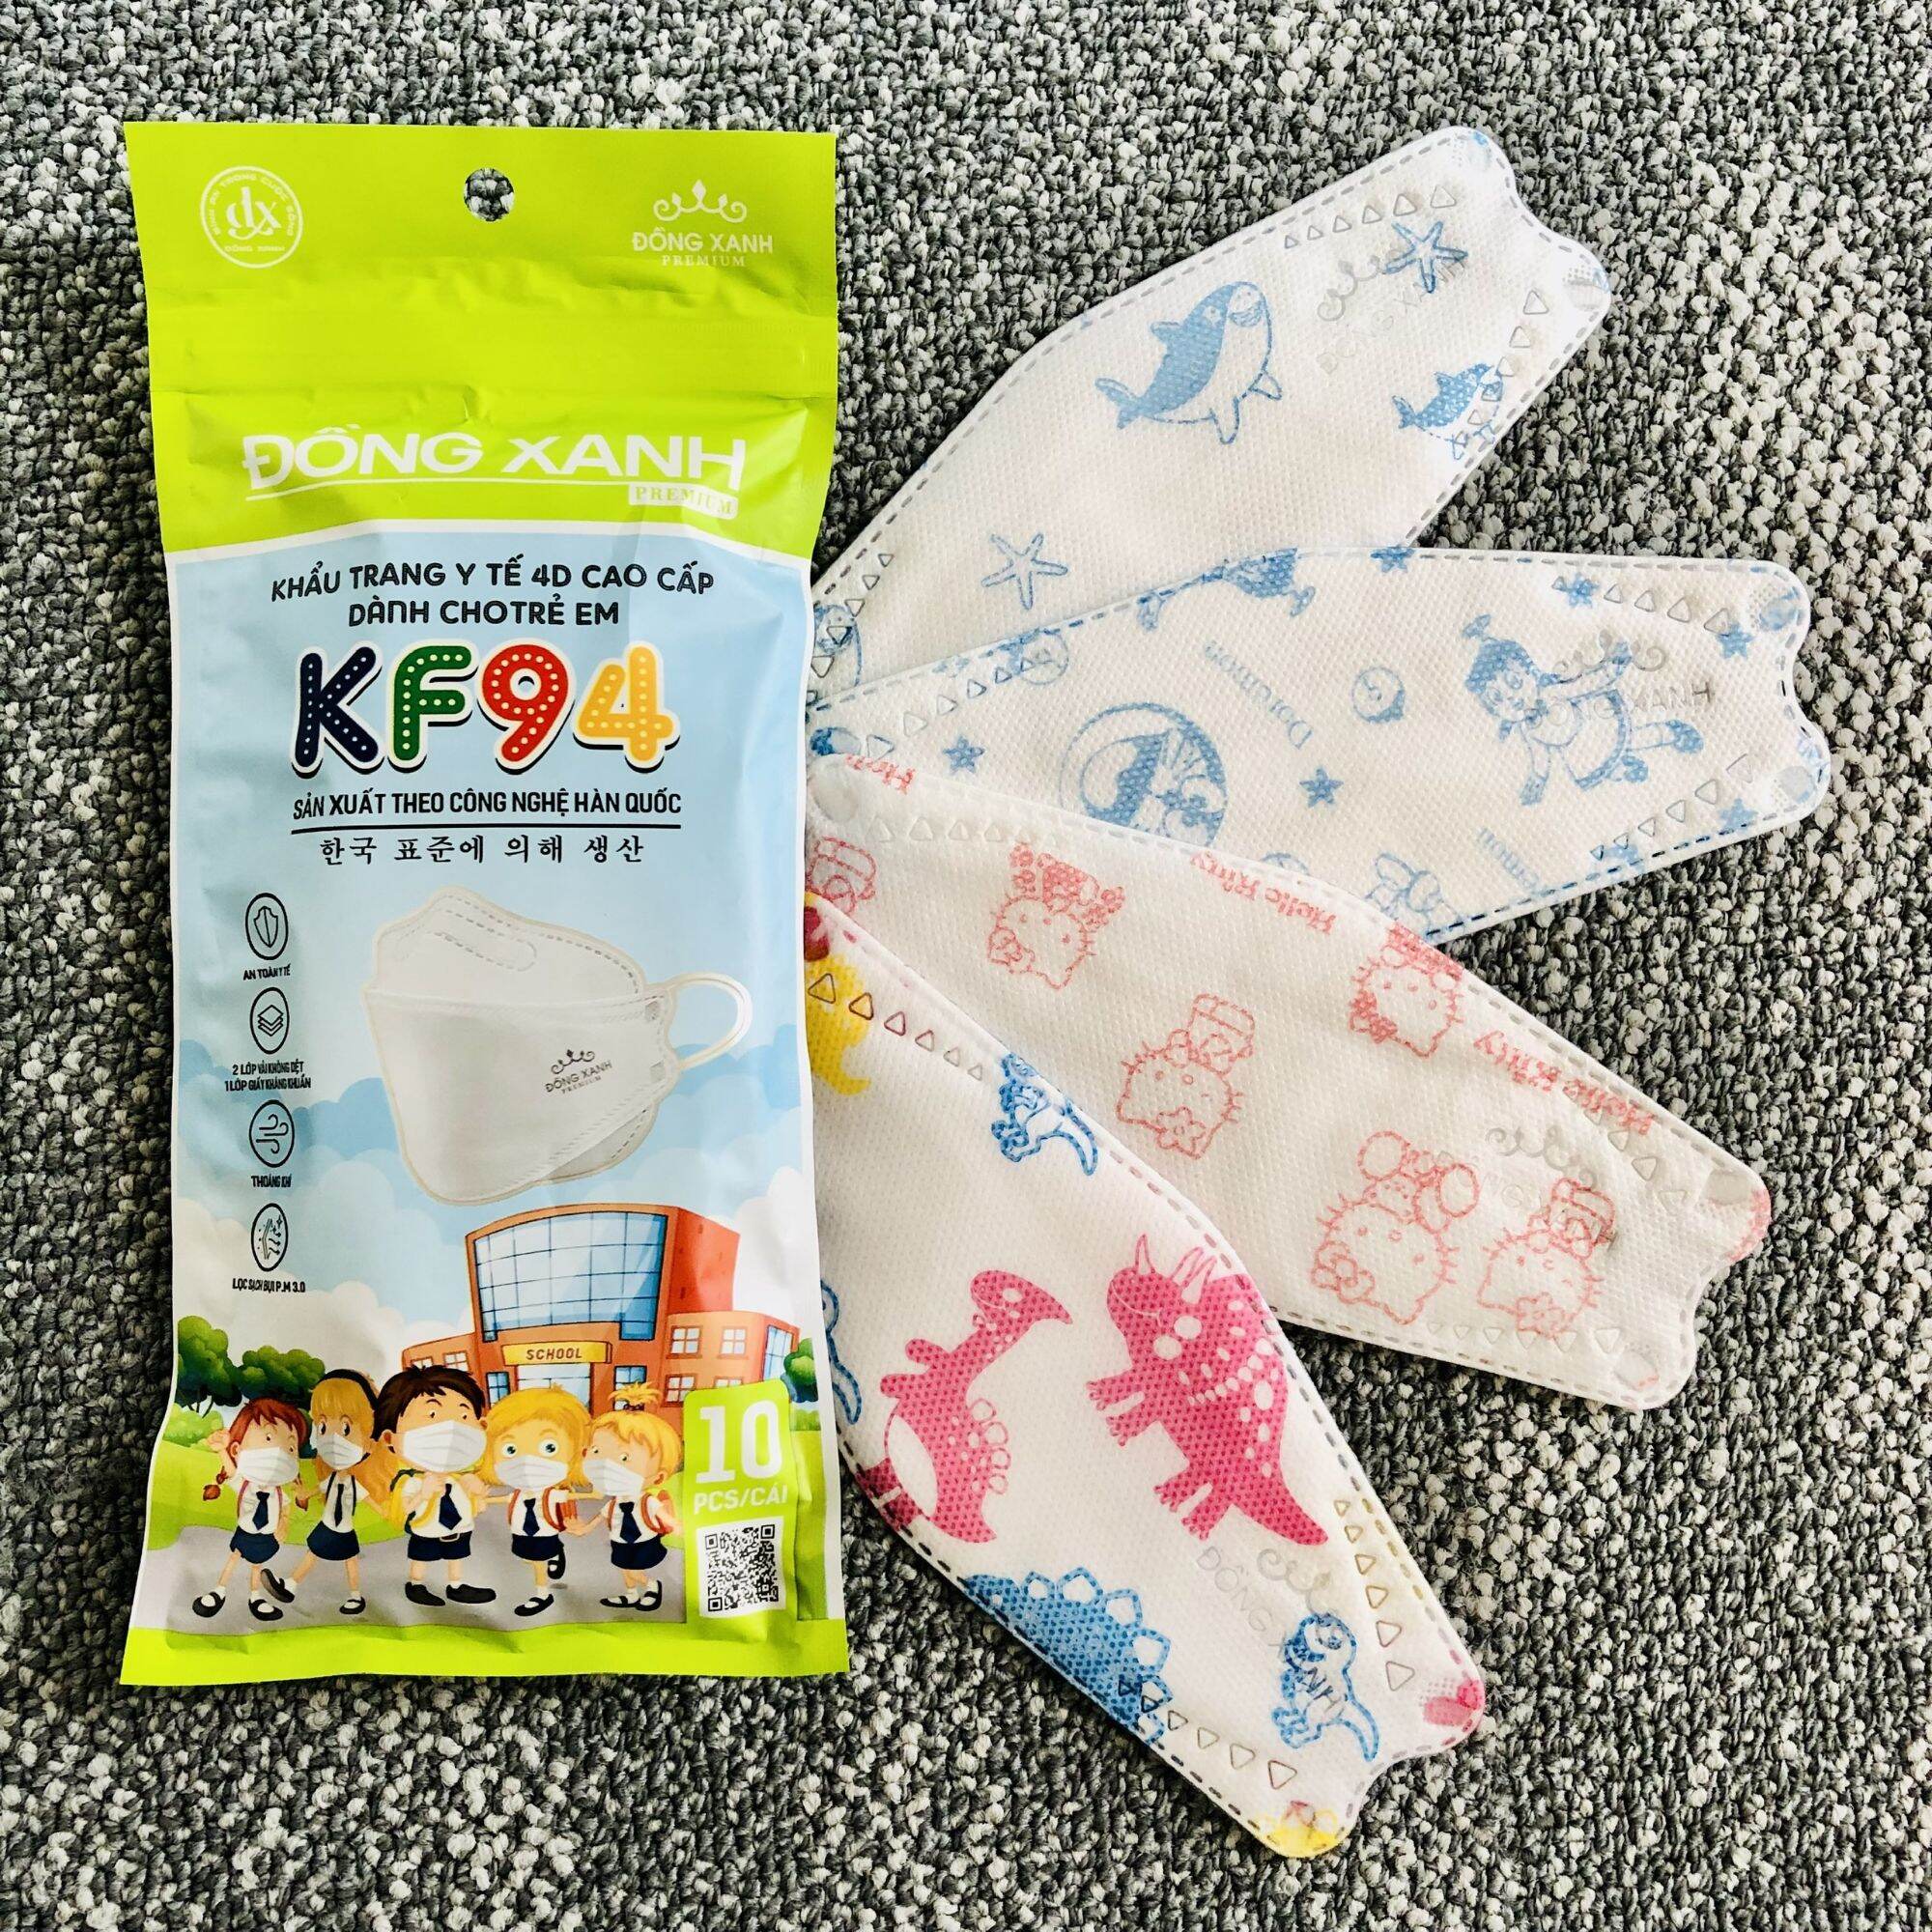 Túi khẩu trang kf94 trẻ em đồng xanh premium 10 cái túi - ảnh sản phẩm 4